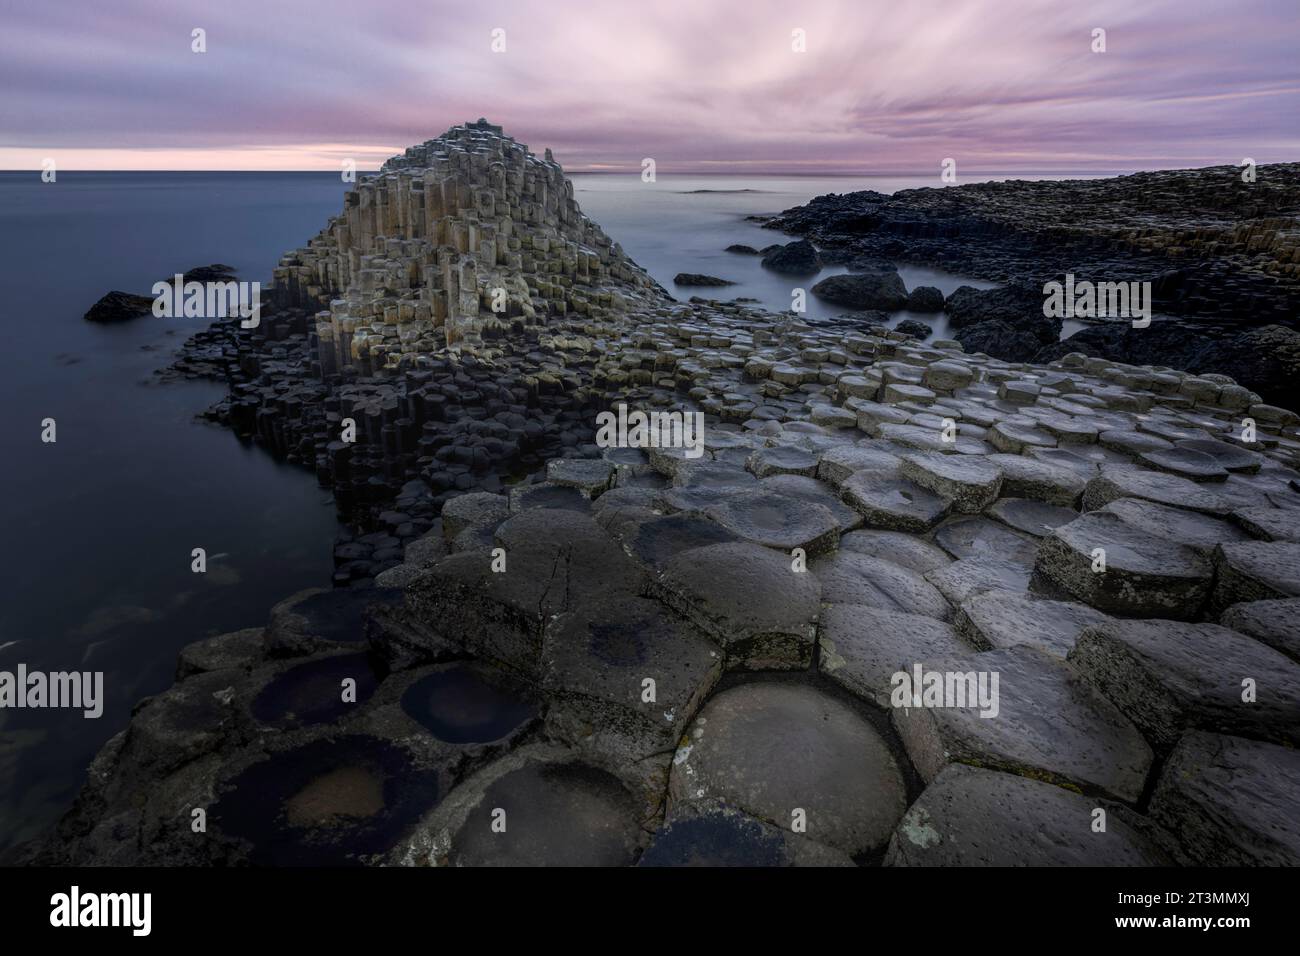 La chaussée des géants est un site classé au patrimoine mondial de l'UNESCO situé sur la côte de l'Irlande du Nord. C'est une merveille géologique composée de plus de 40 000 int Banque D'Images